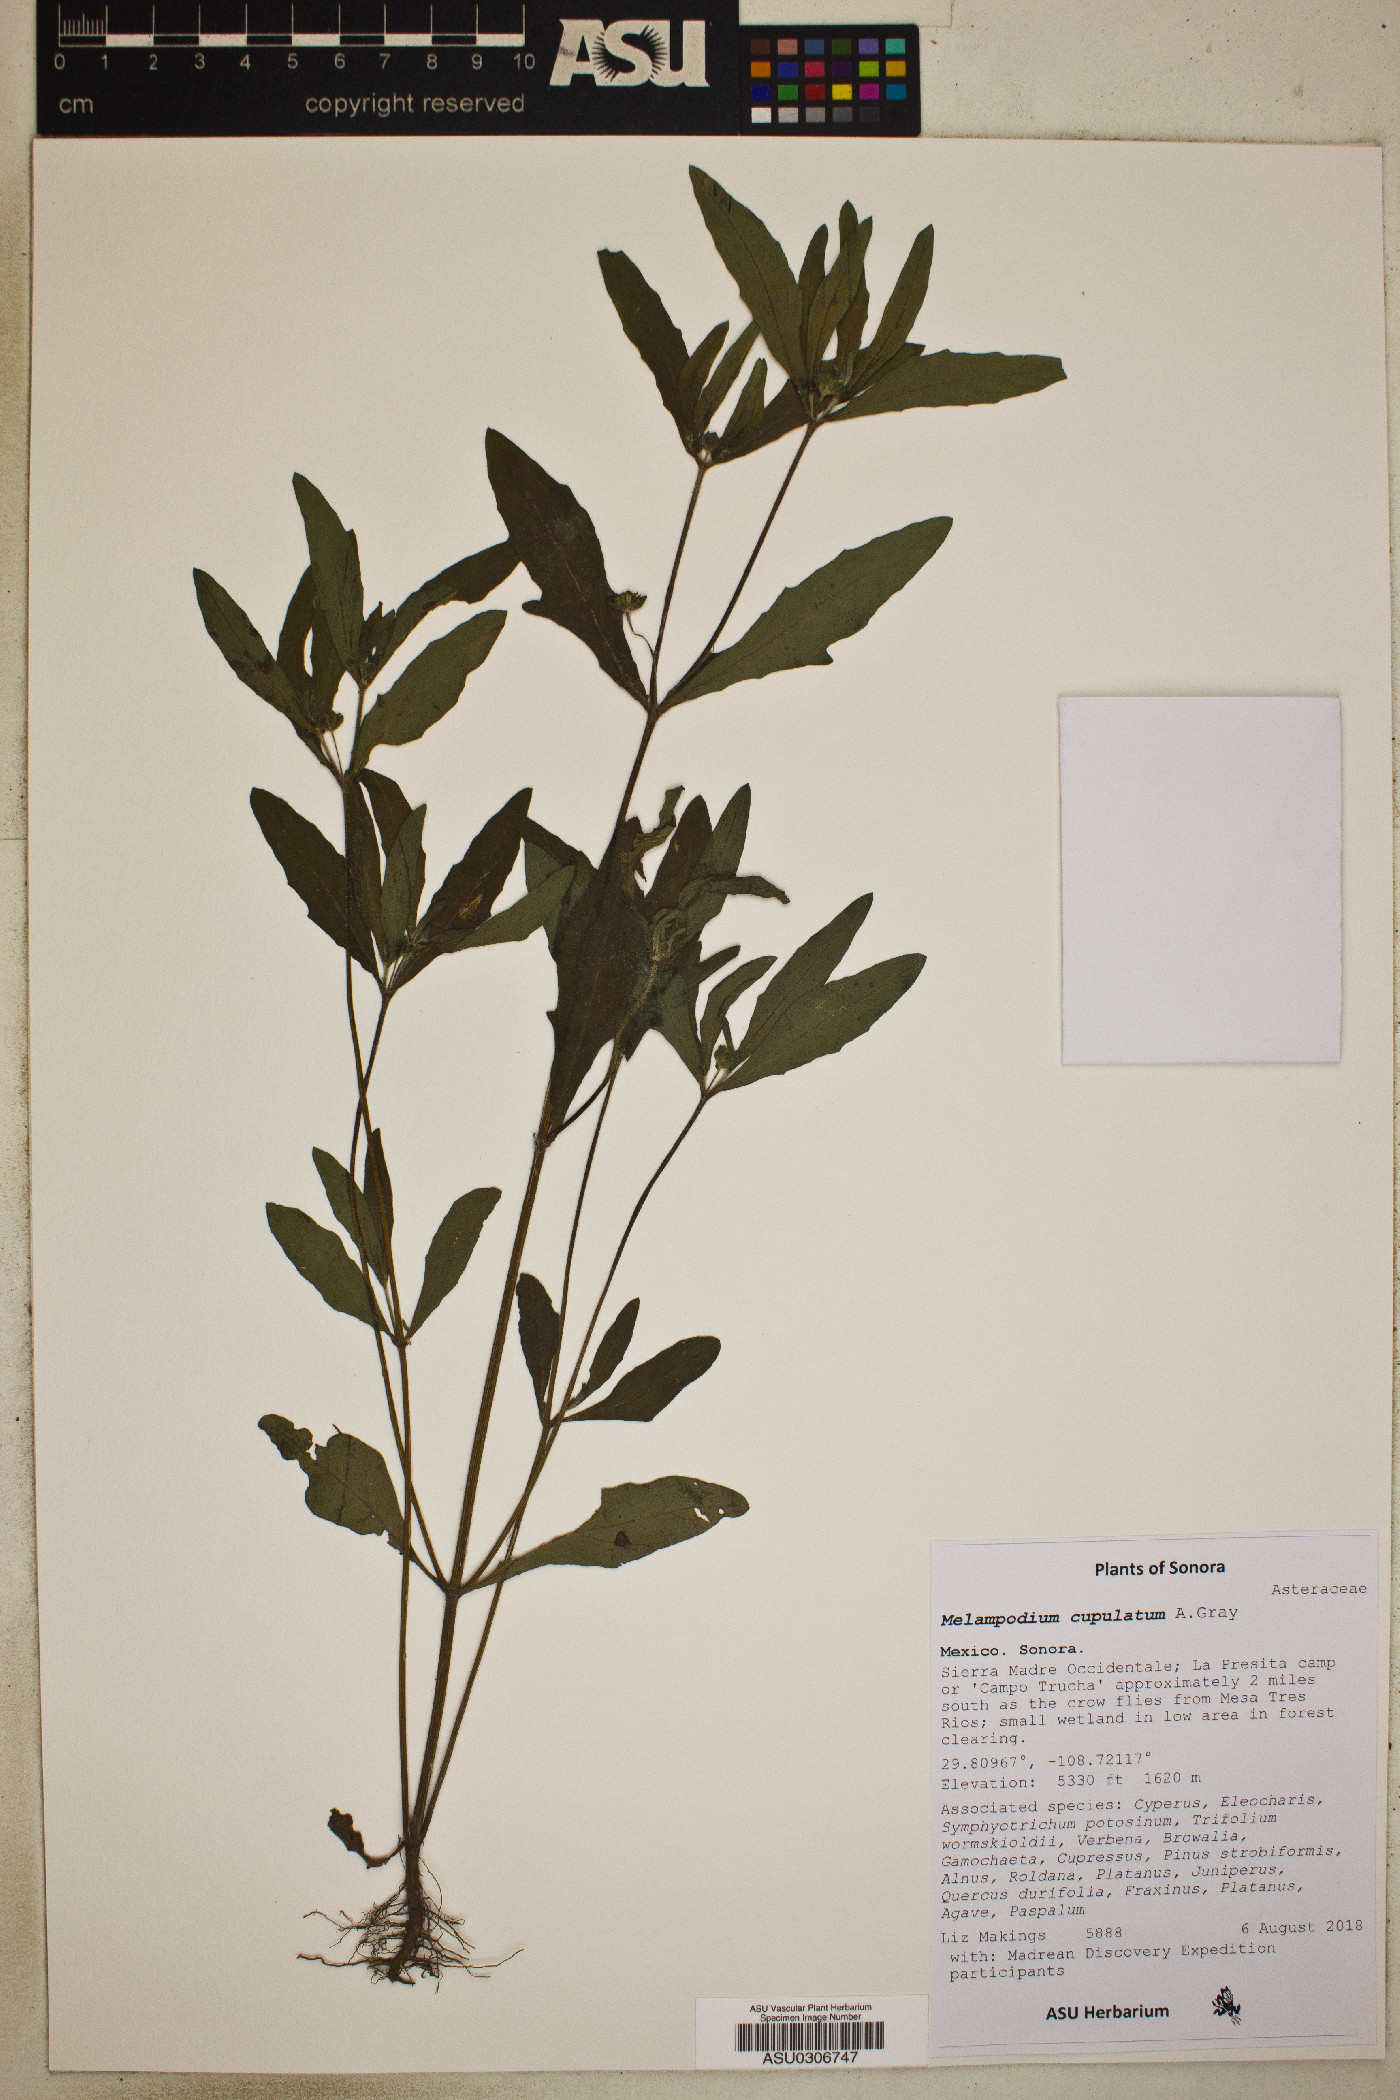 Melampodium cupulatum image